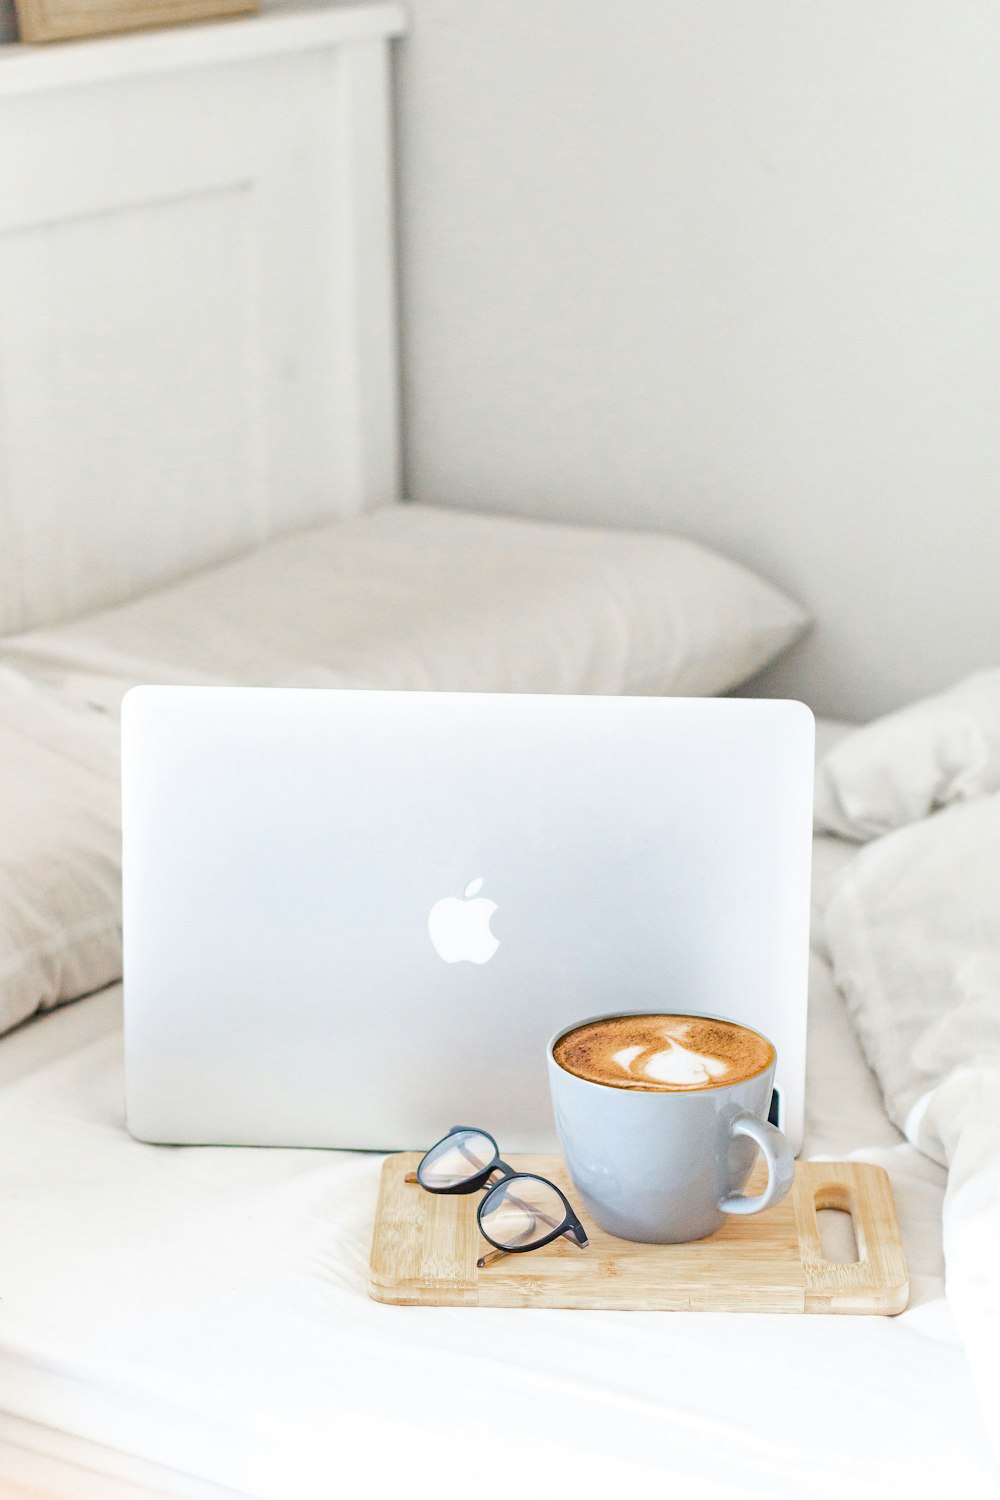 MacBook Air neben weißer Keramiktasse auf weißem Bett